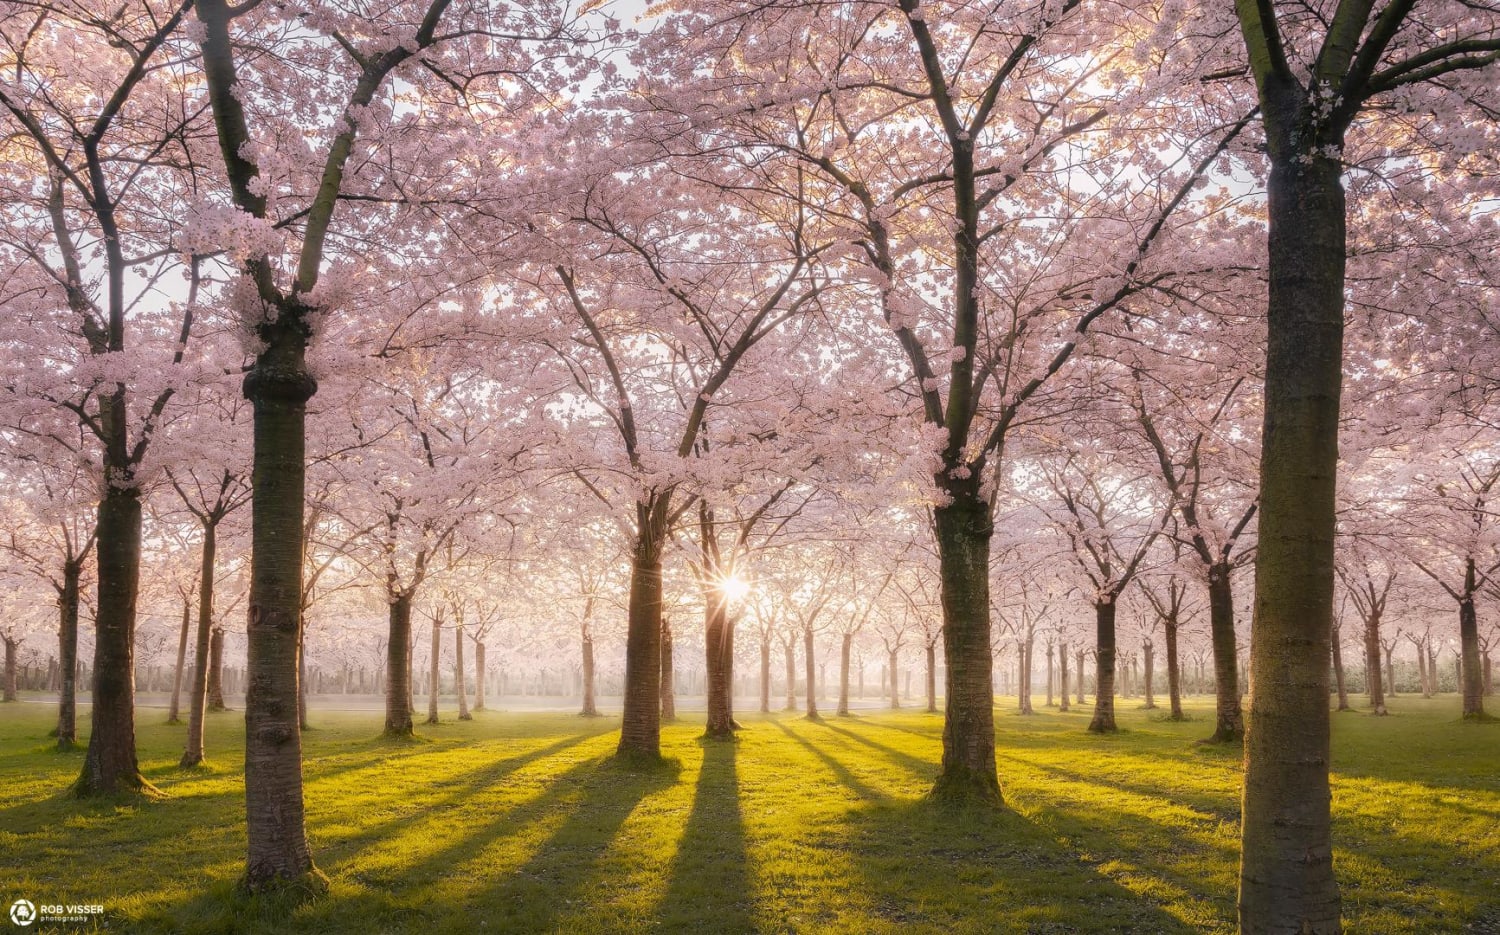 Blossom park, Amstelveen, the Netherlands